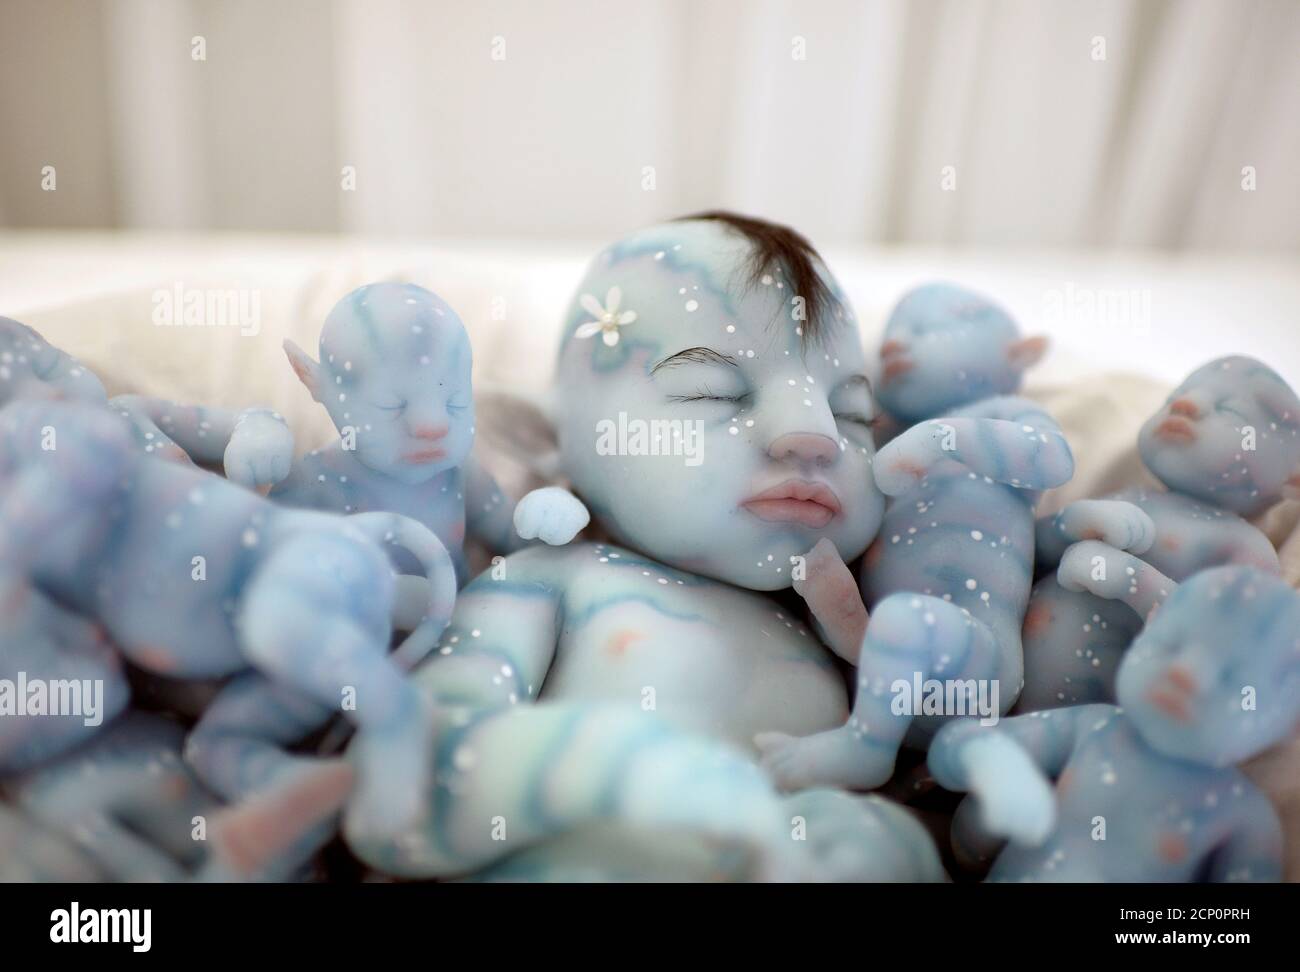 Los modelos de silicona que representan a bebés del largometraje Avatar se exhiben en el Bilbao Reborn Doll Show, una feria de muestras con bebés hiperrealistas de silicona y vinilo, conocida